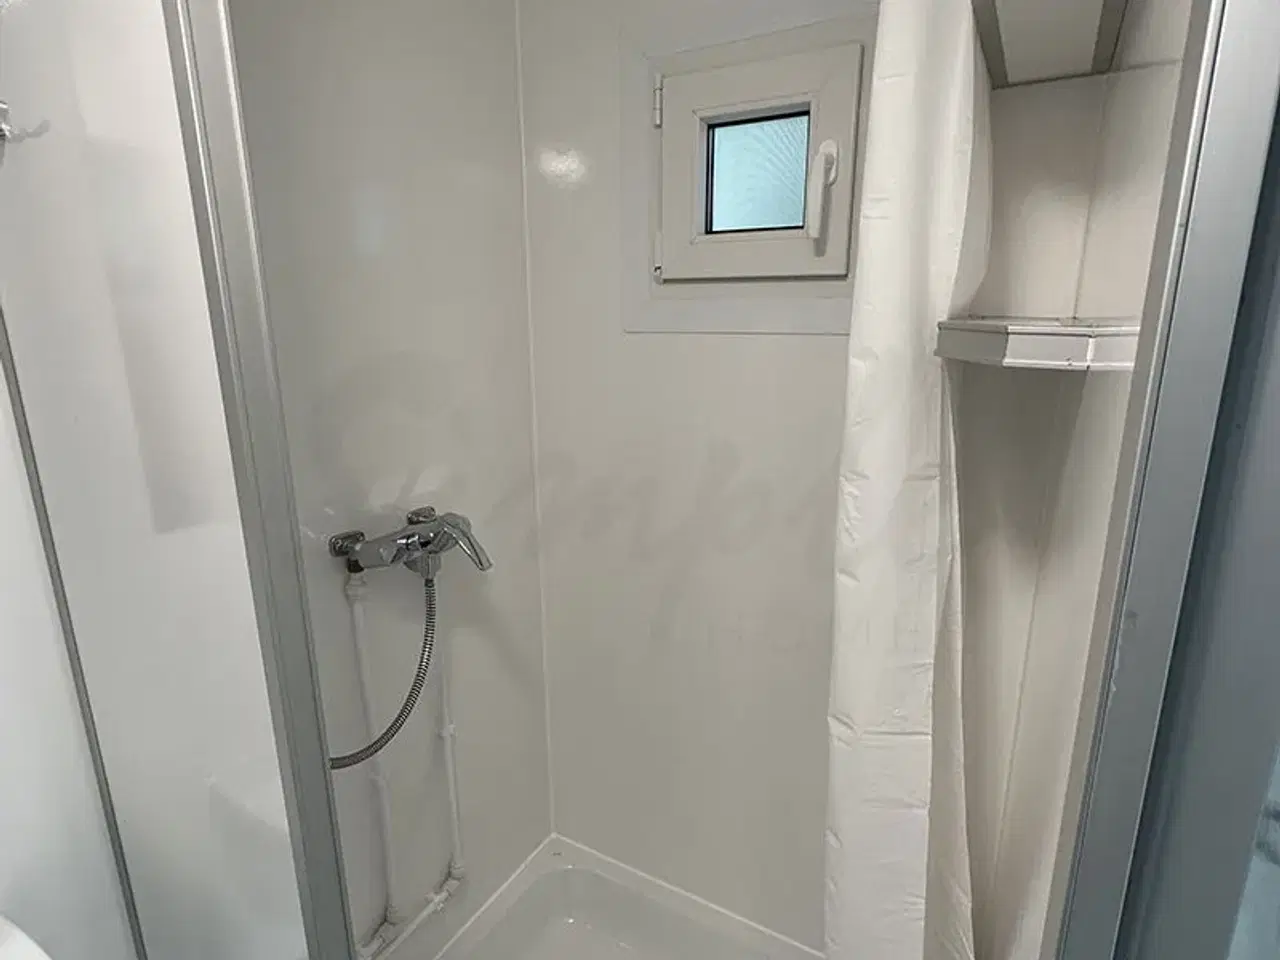 Billede 9 - Mini mobilt badeværelse - UDLEJES!